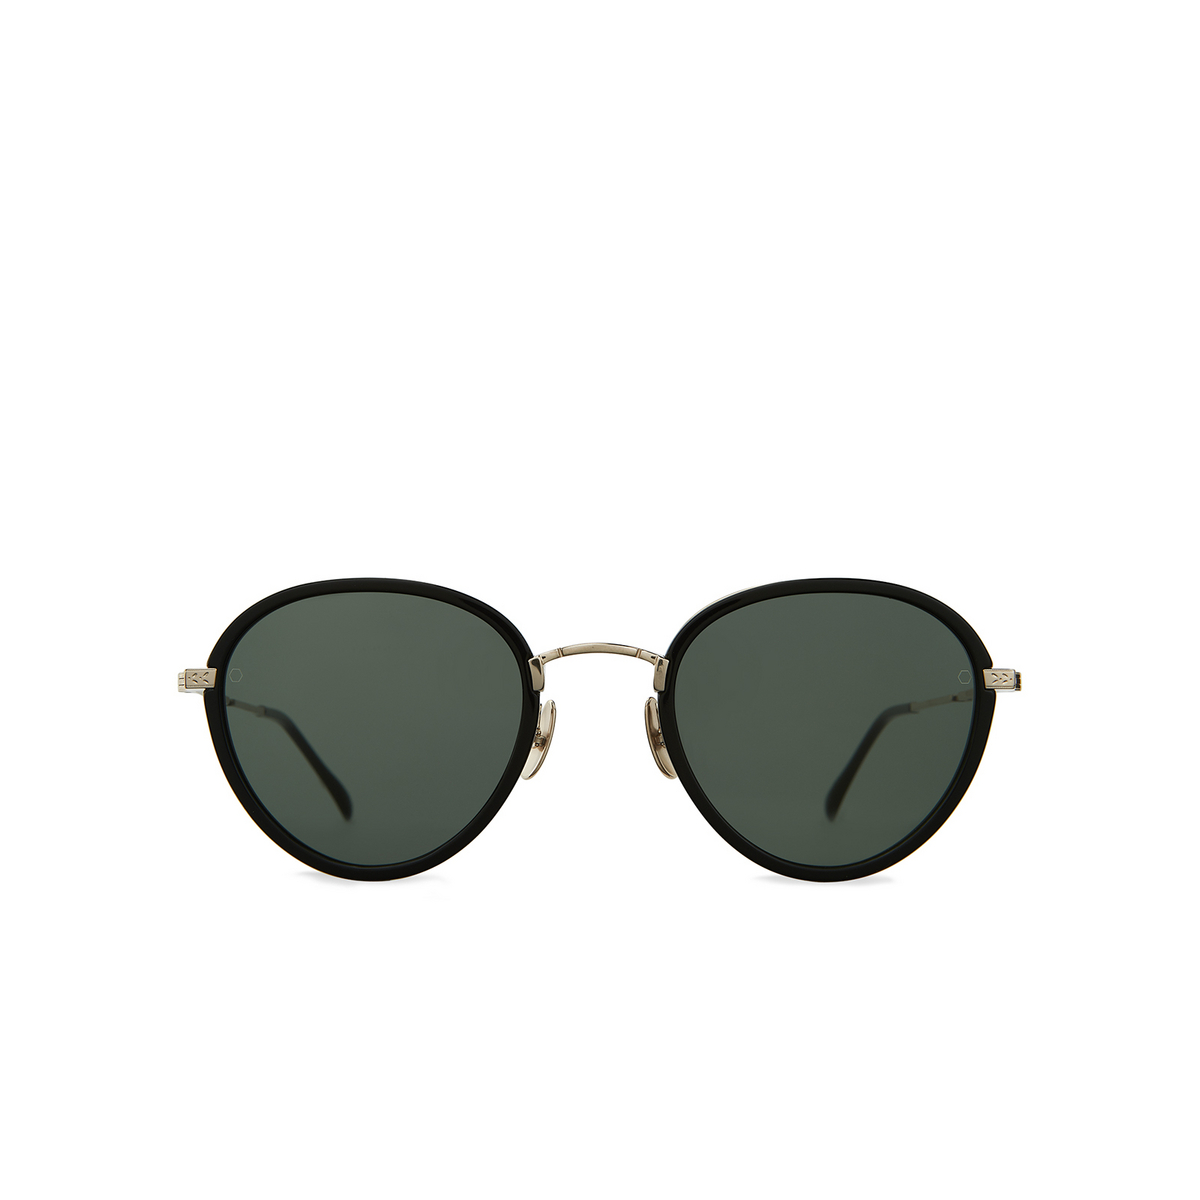 Mr. Leight® Round Sunglasses: Monterey Sl color Matte Black / G15 + Ash / Bluelight MBK/G15+ASH/BLUL - front view.